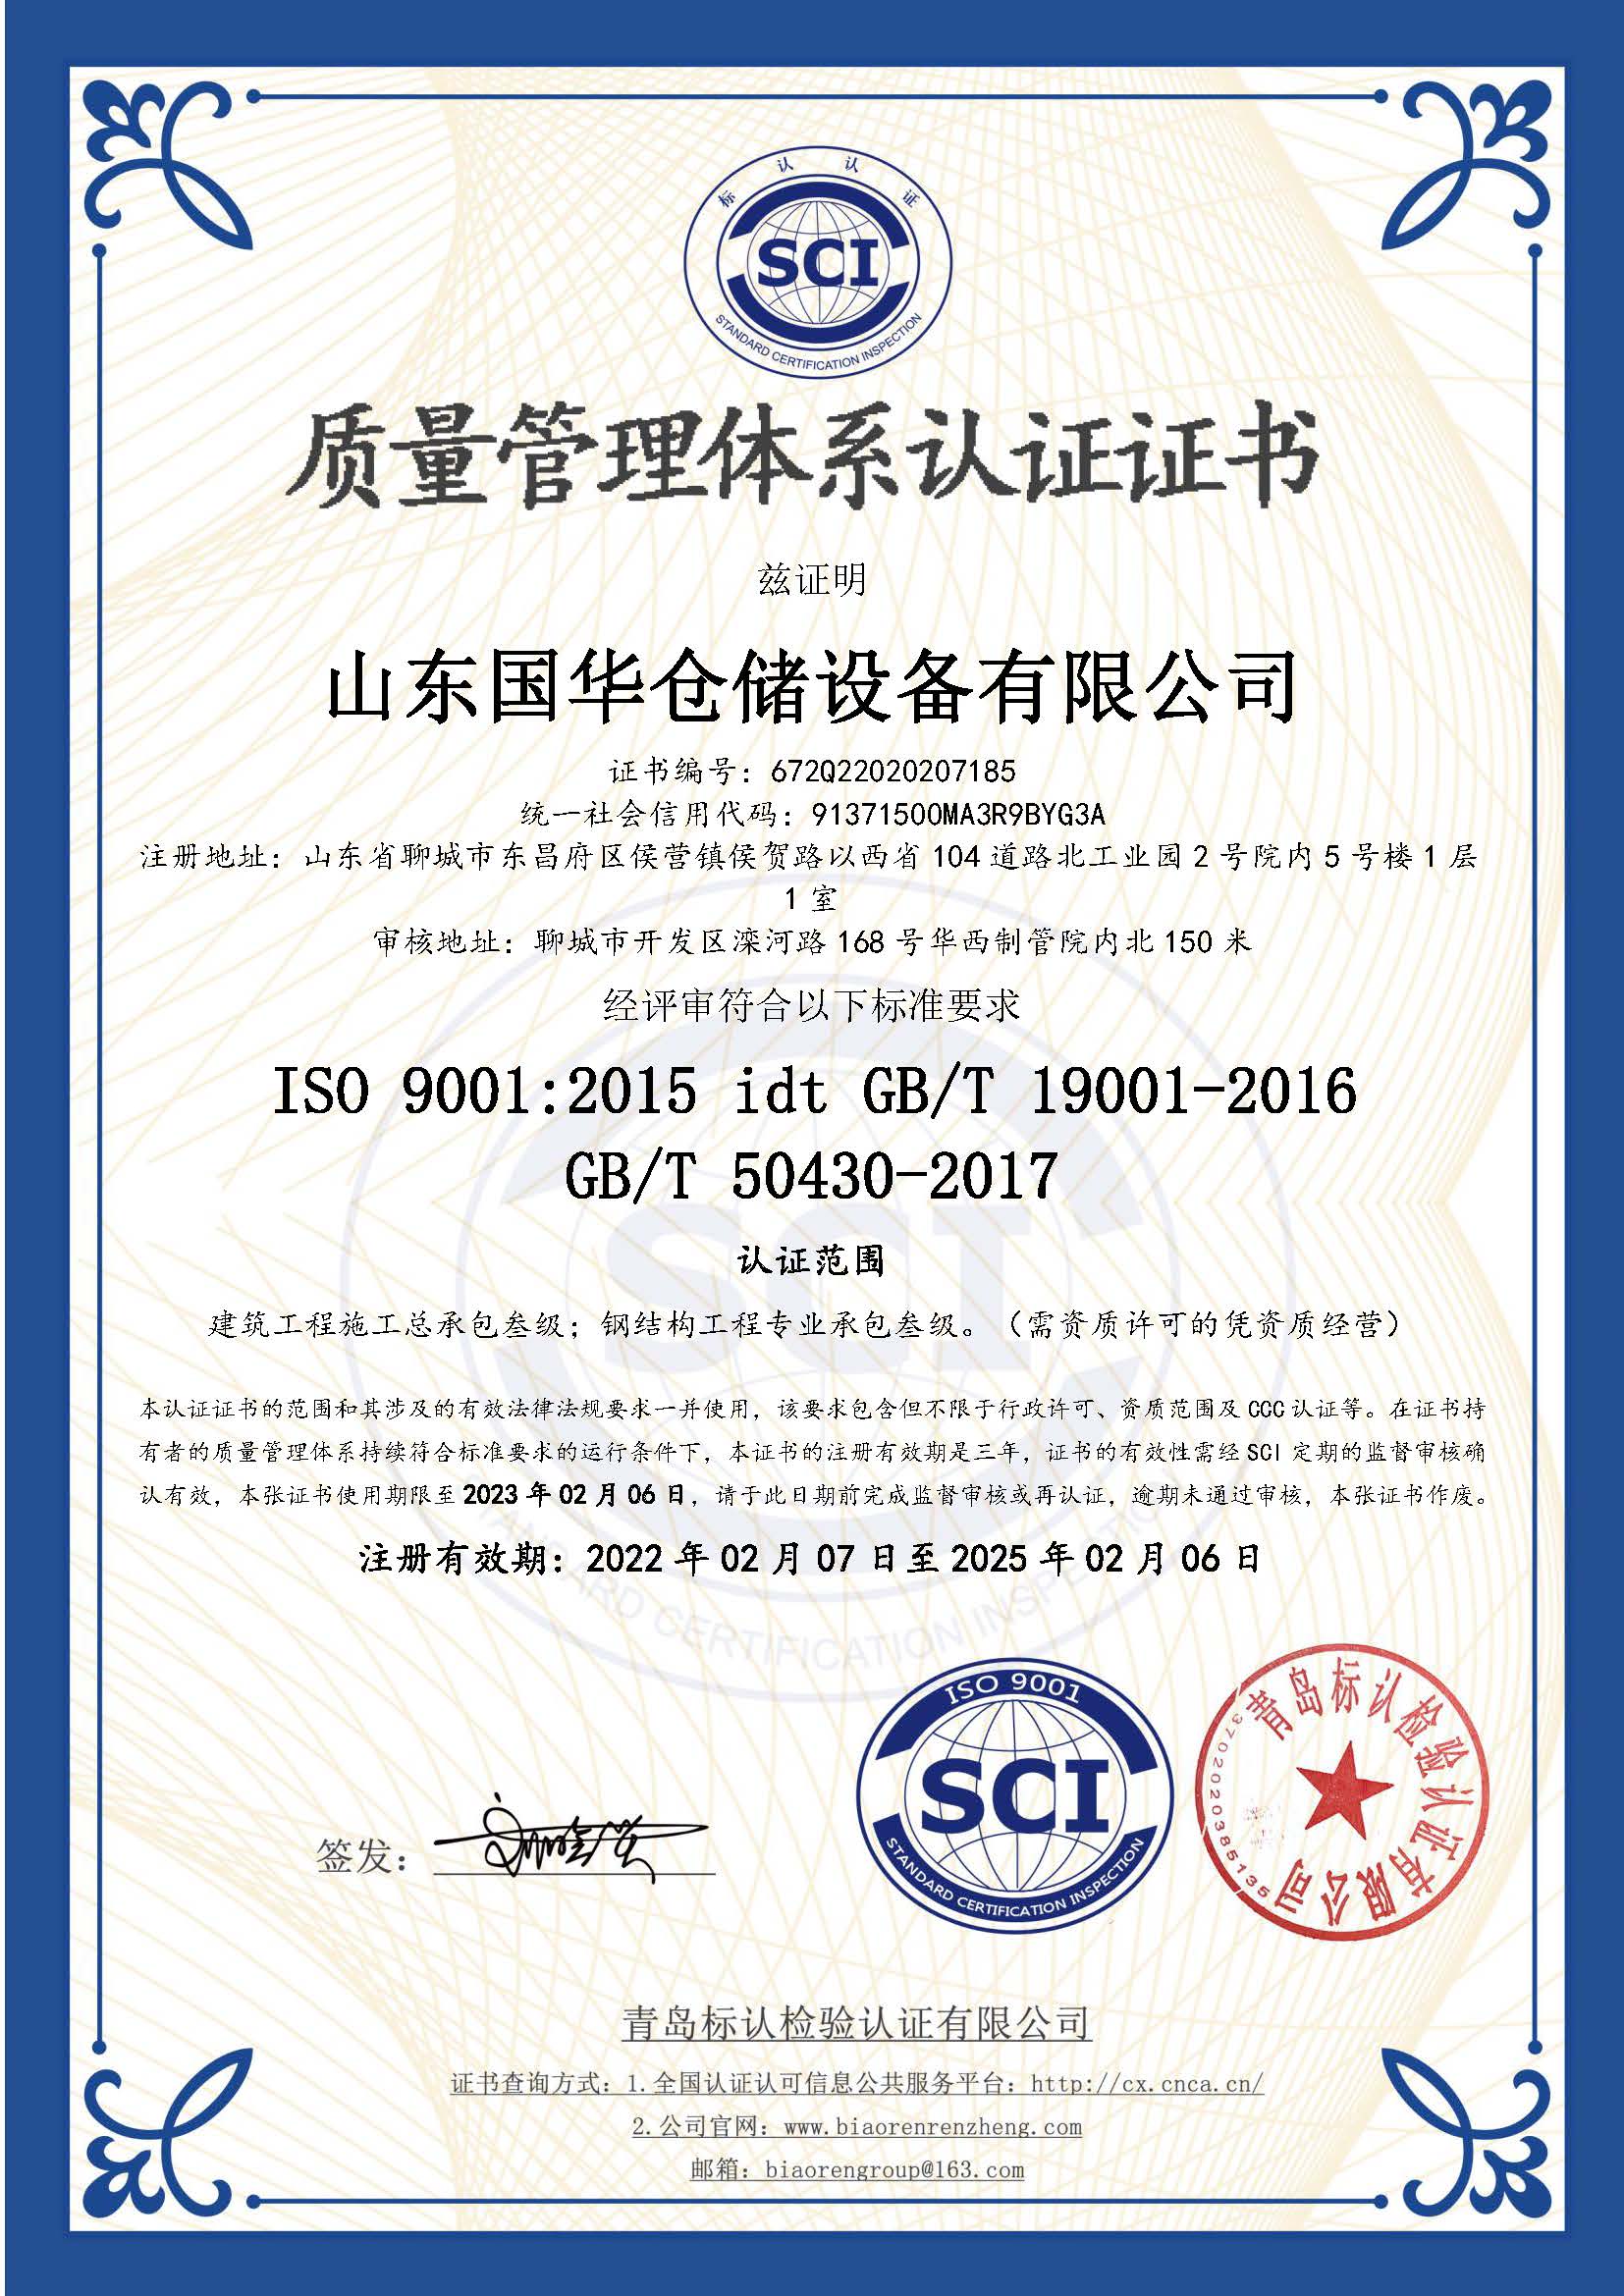 嘉峪关钢板仓ISO质量体系认证证书